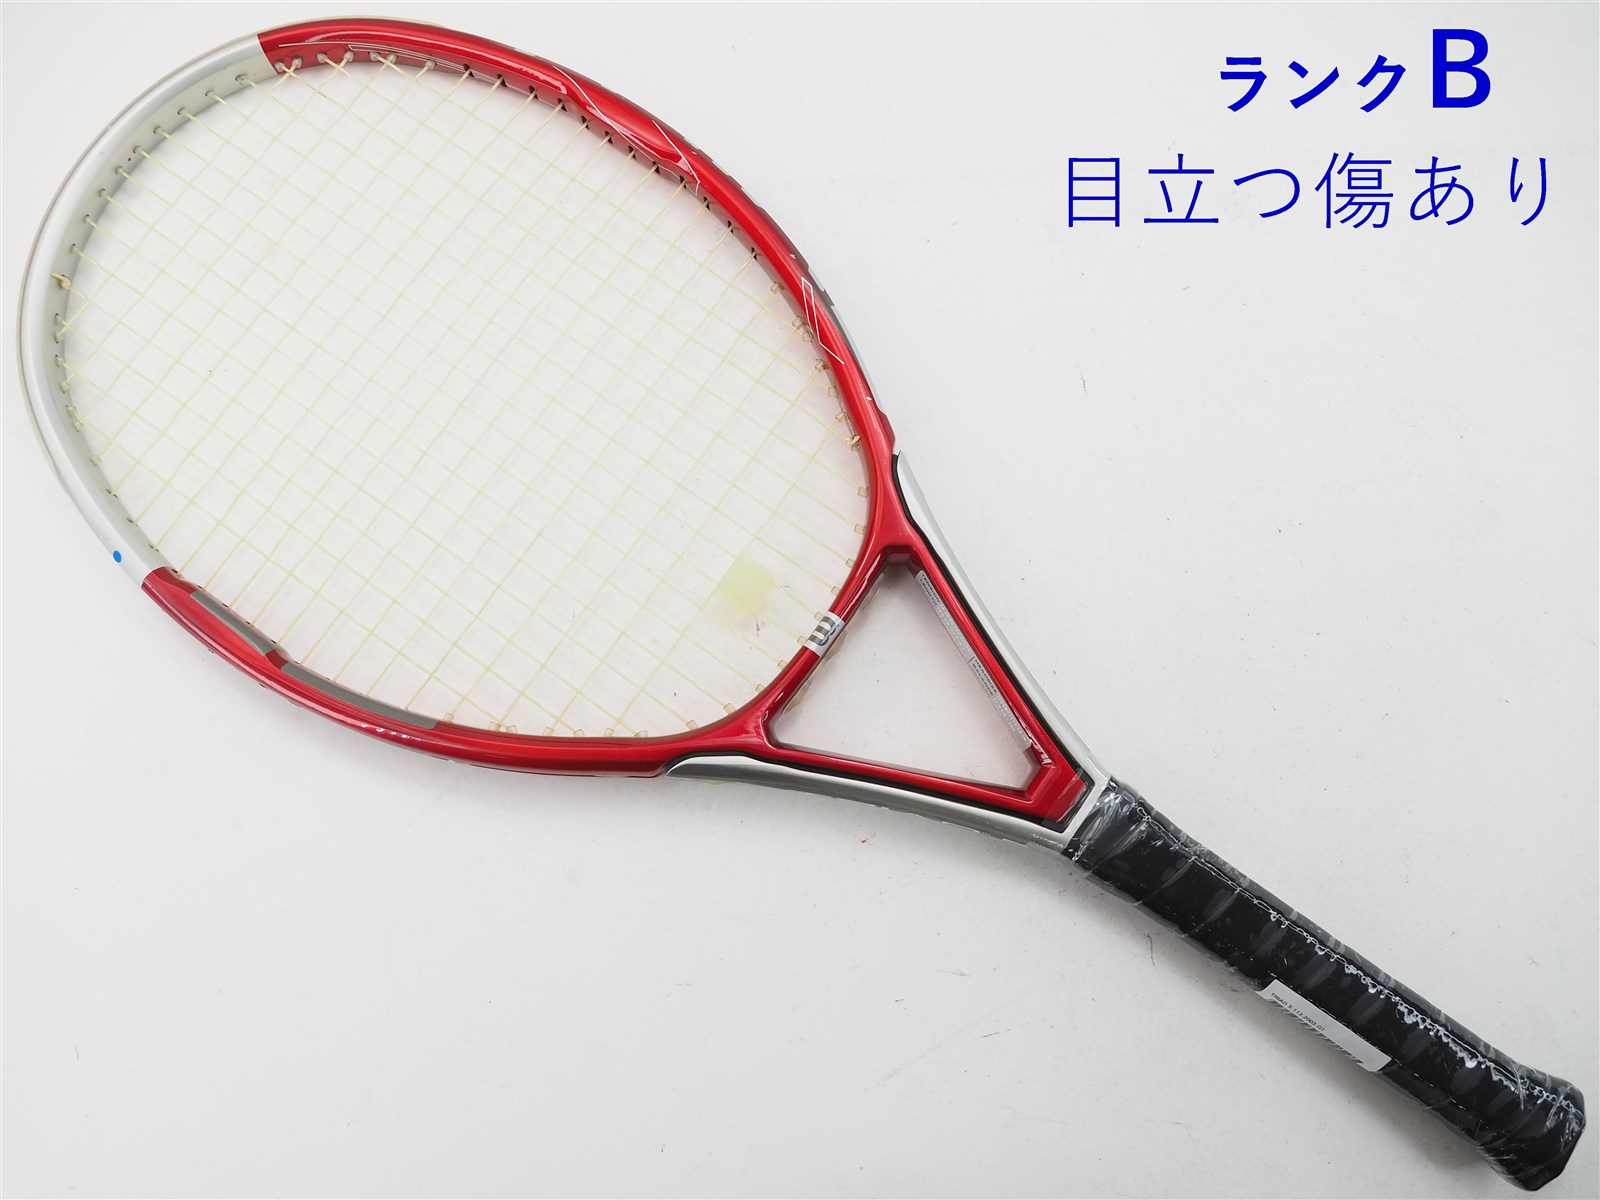 テニスラケット ウィルソン トライアド 3 115 2003年モデル (G2)WILSON ...